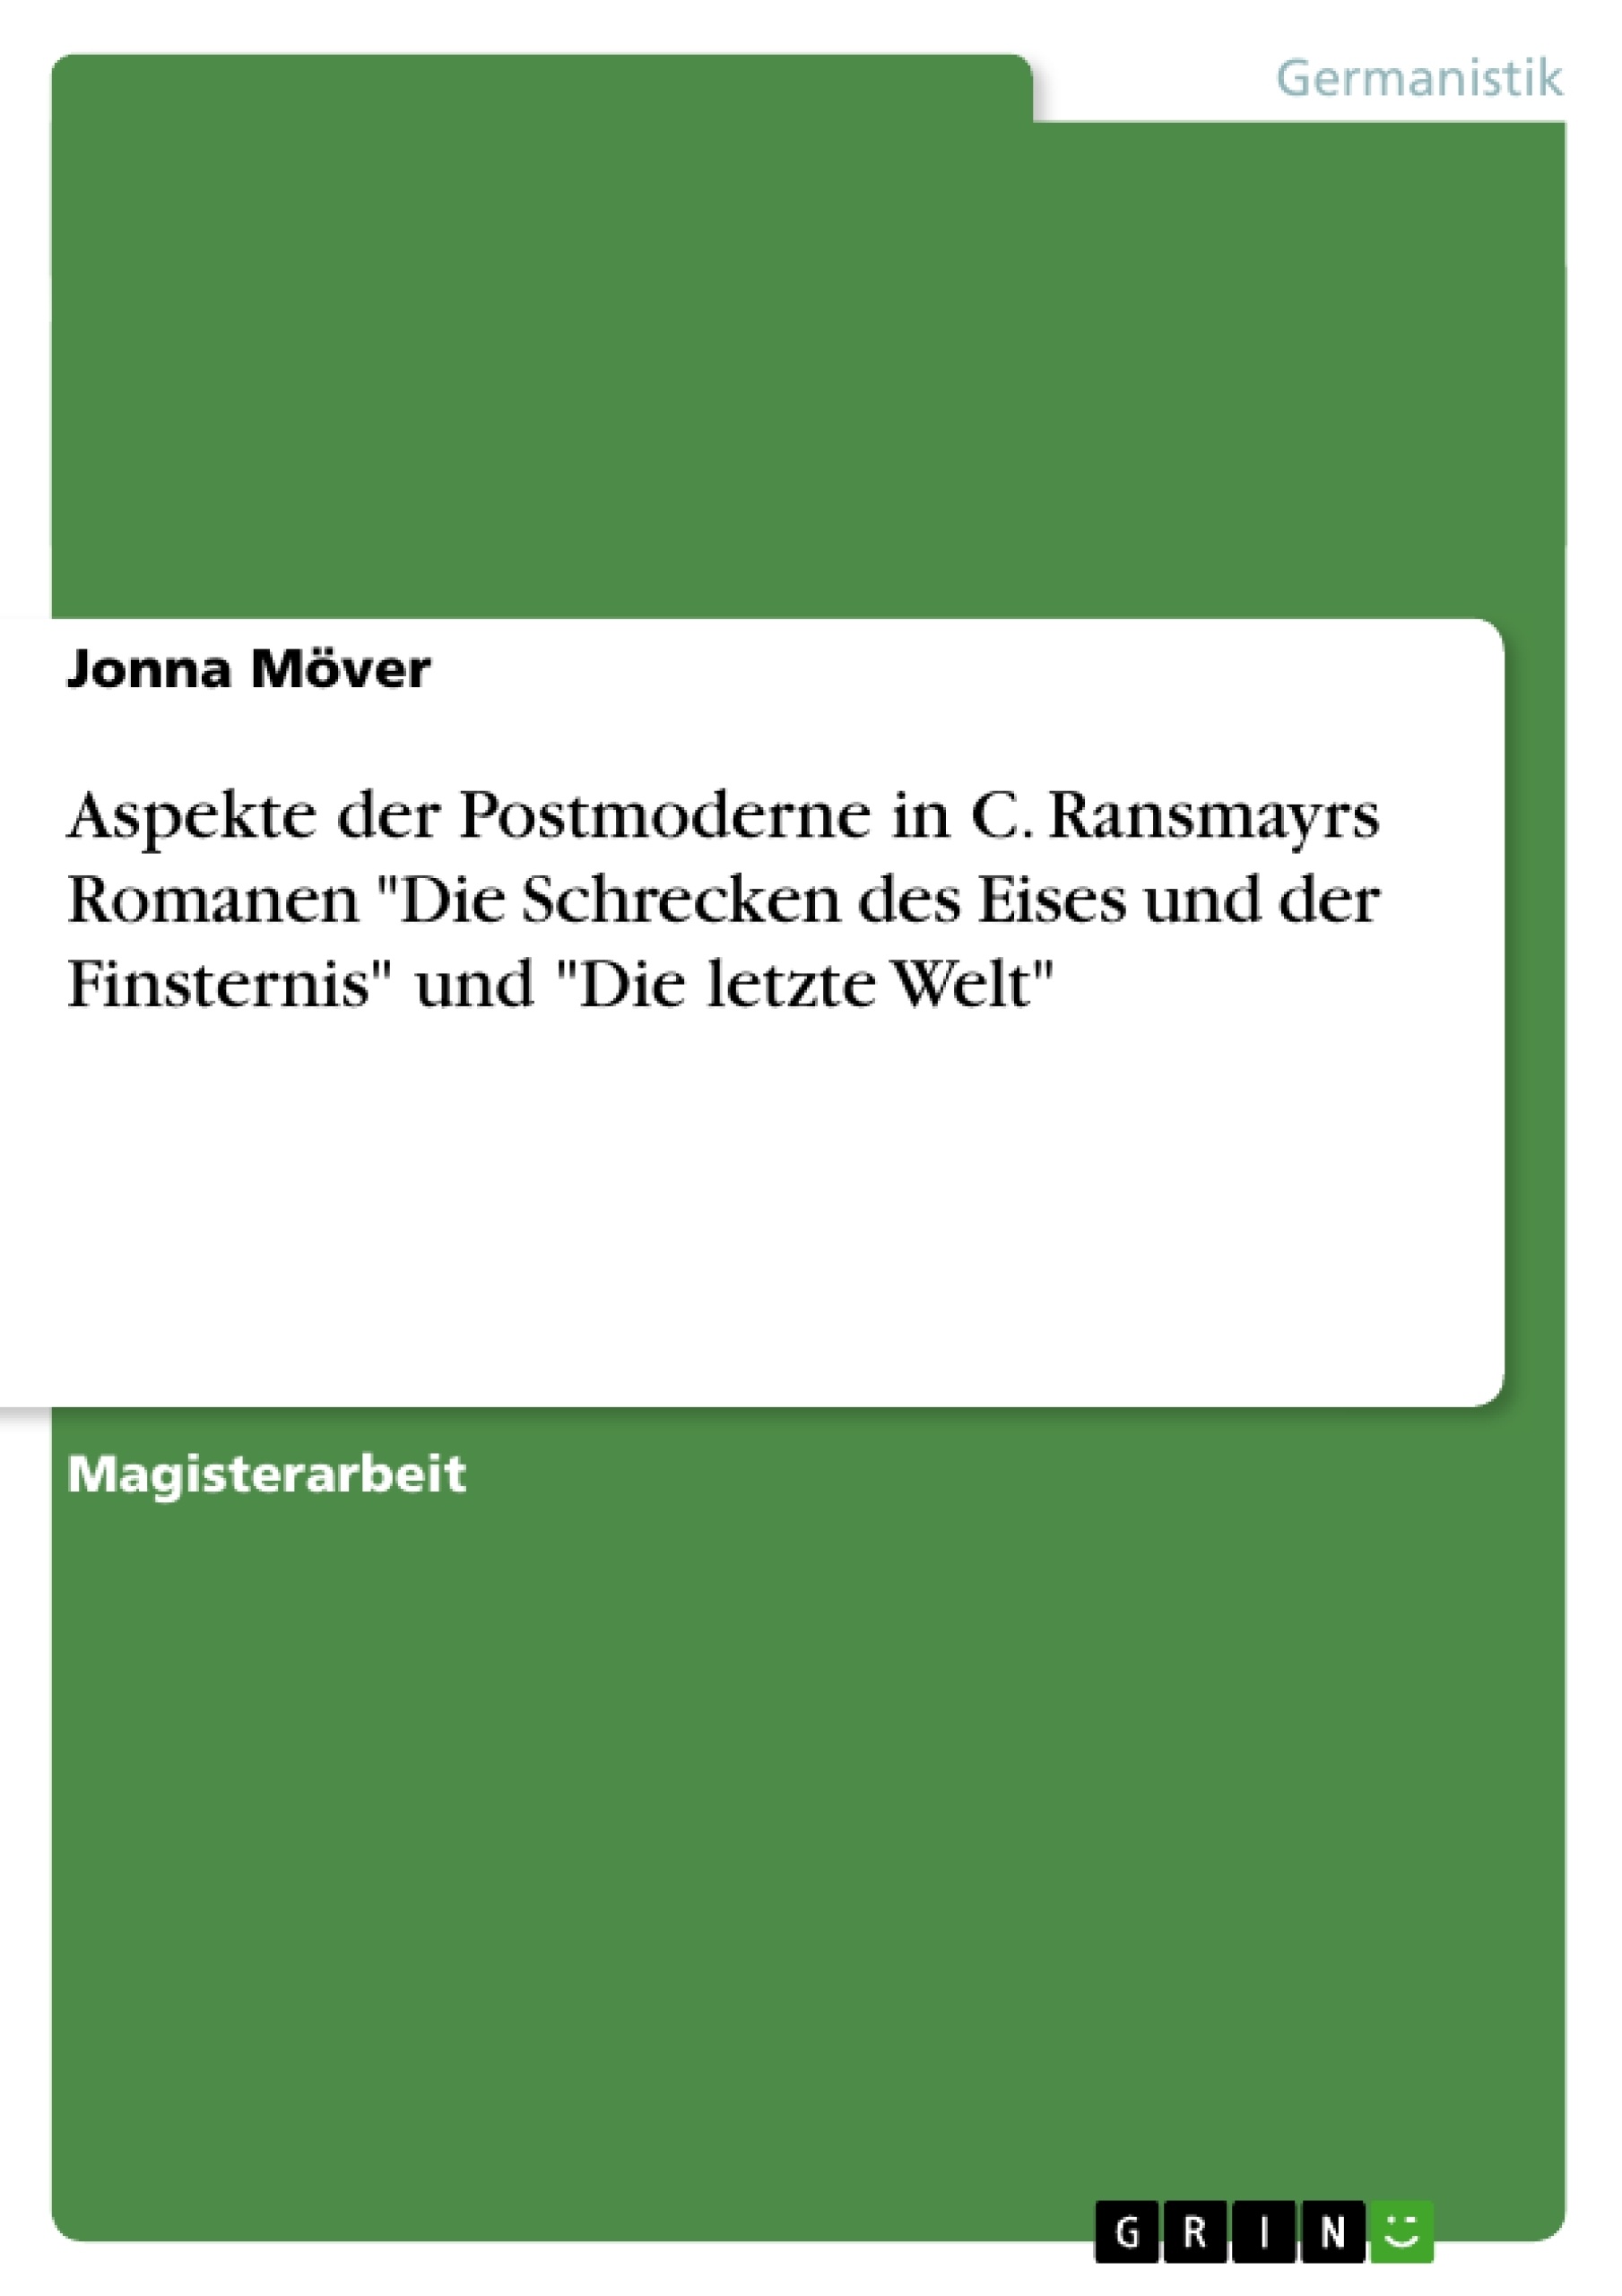 Título: Aspekte der Postmoderne in C. Ransmayrs Romanen "Die Schrecken des Eises und der Finsternis" und "Die letzte Welt"